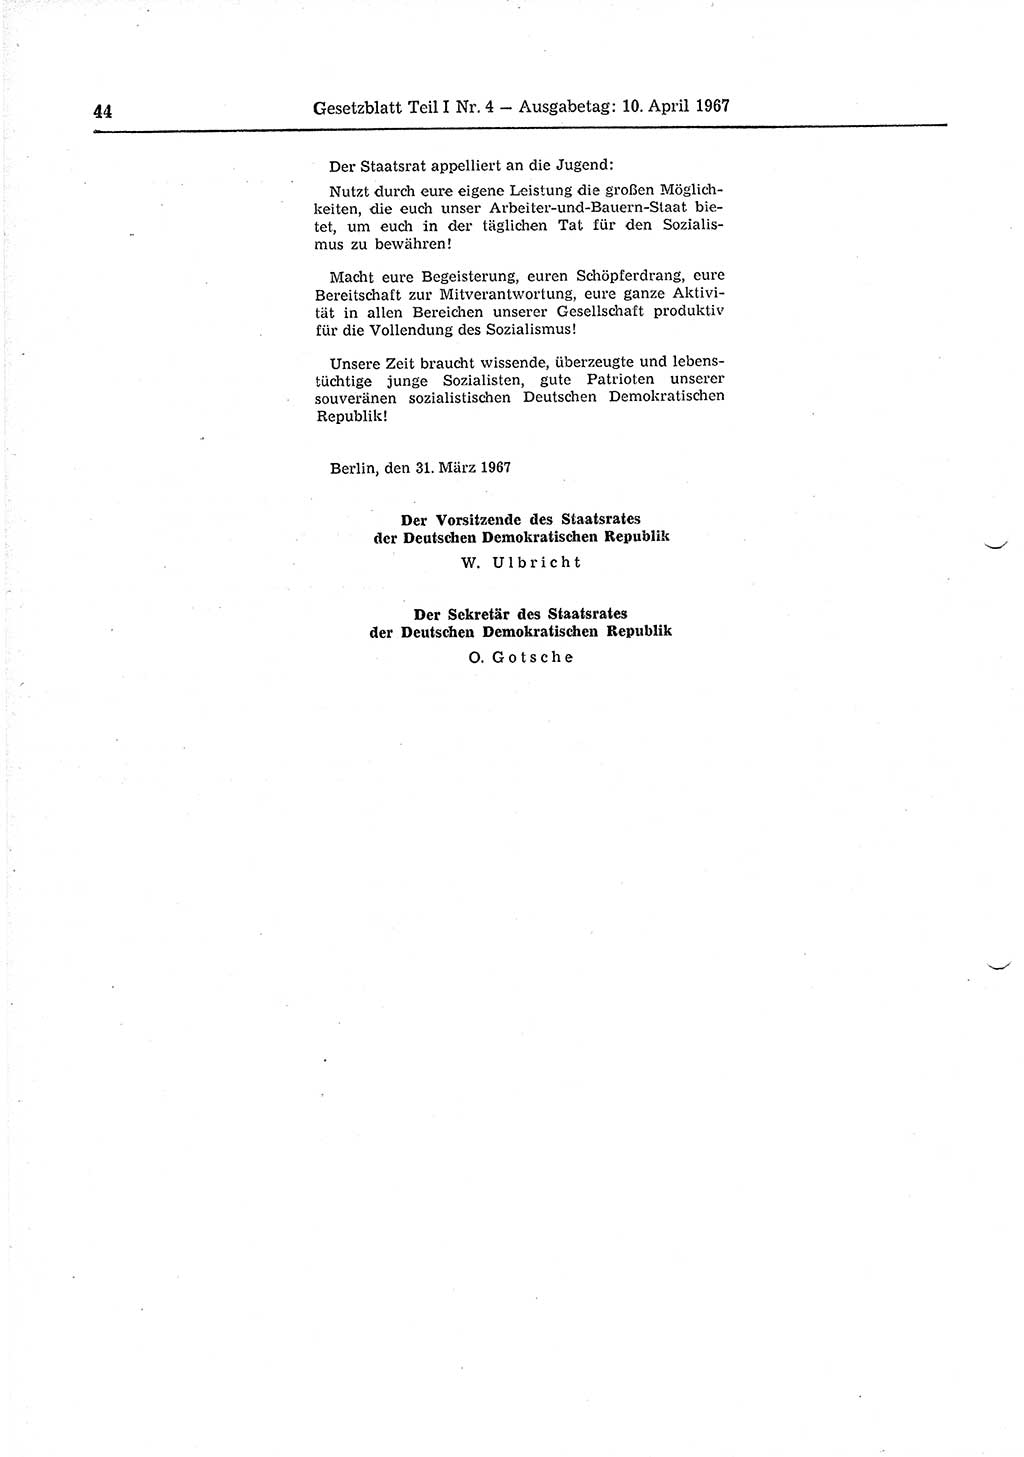 Gesetzblatt (GBl.) der Deutschen Demokratischen Republik (DDR) Teil Ⅰ 1967, Seite 44 (GBl. DDR Ⅰ 1967, S. 44)